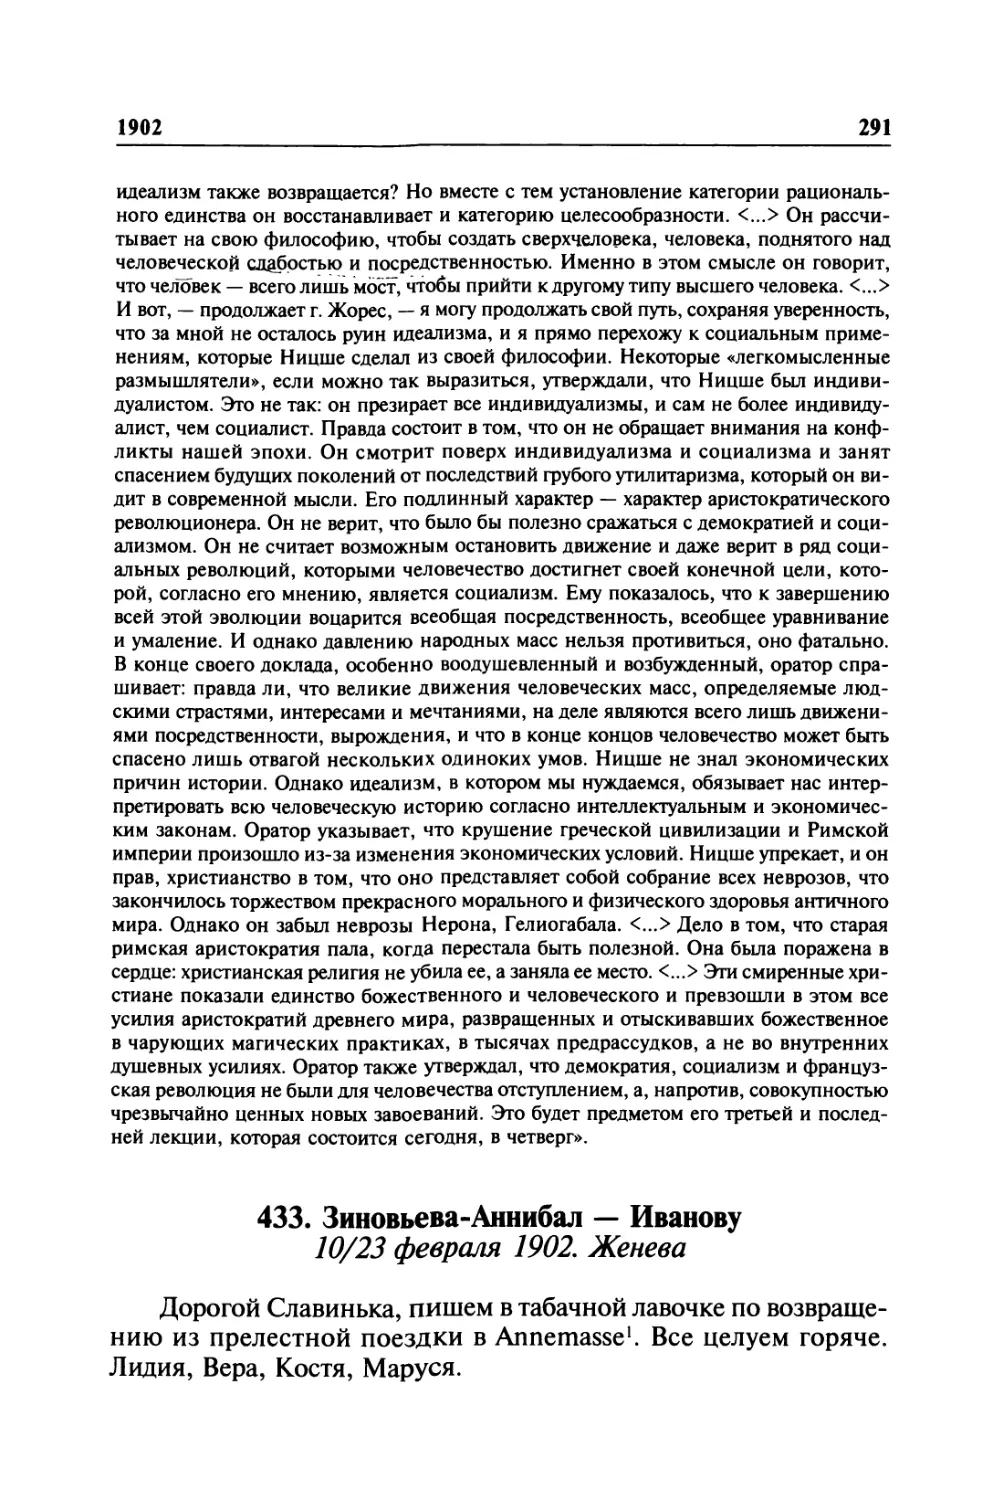 433. Зиновьева-Аннибал — Иванову. 10/23 февраля 1902. Женева